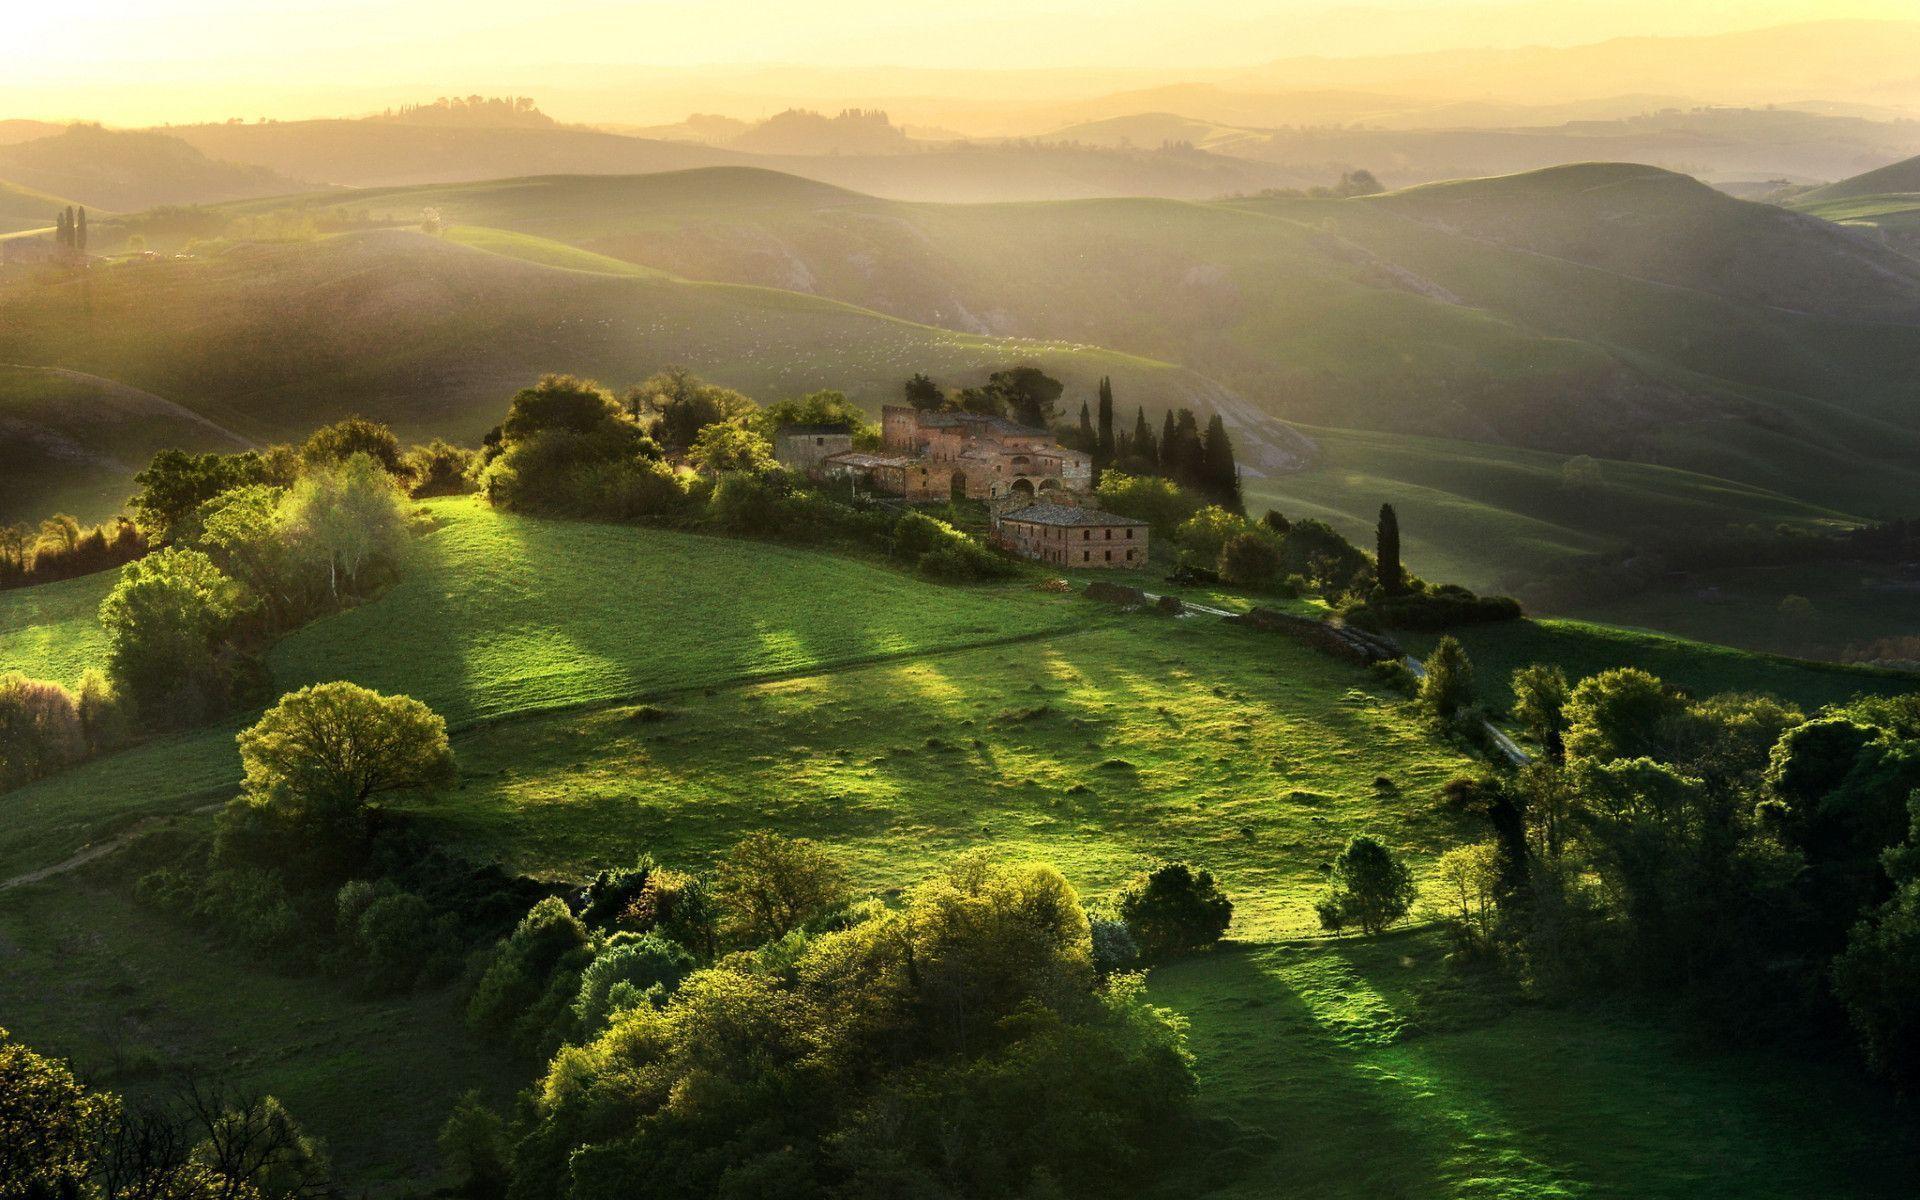 Marvelous scenery of tuscany, italy. t.k pradeep shetty